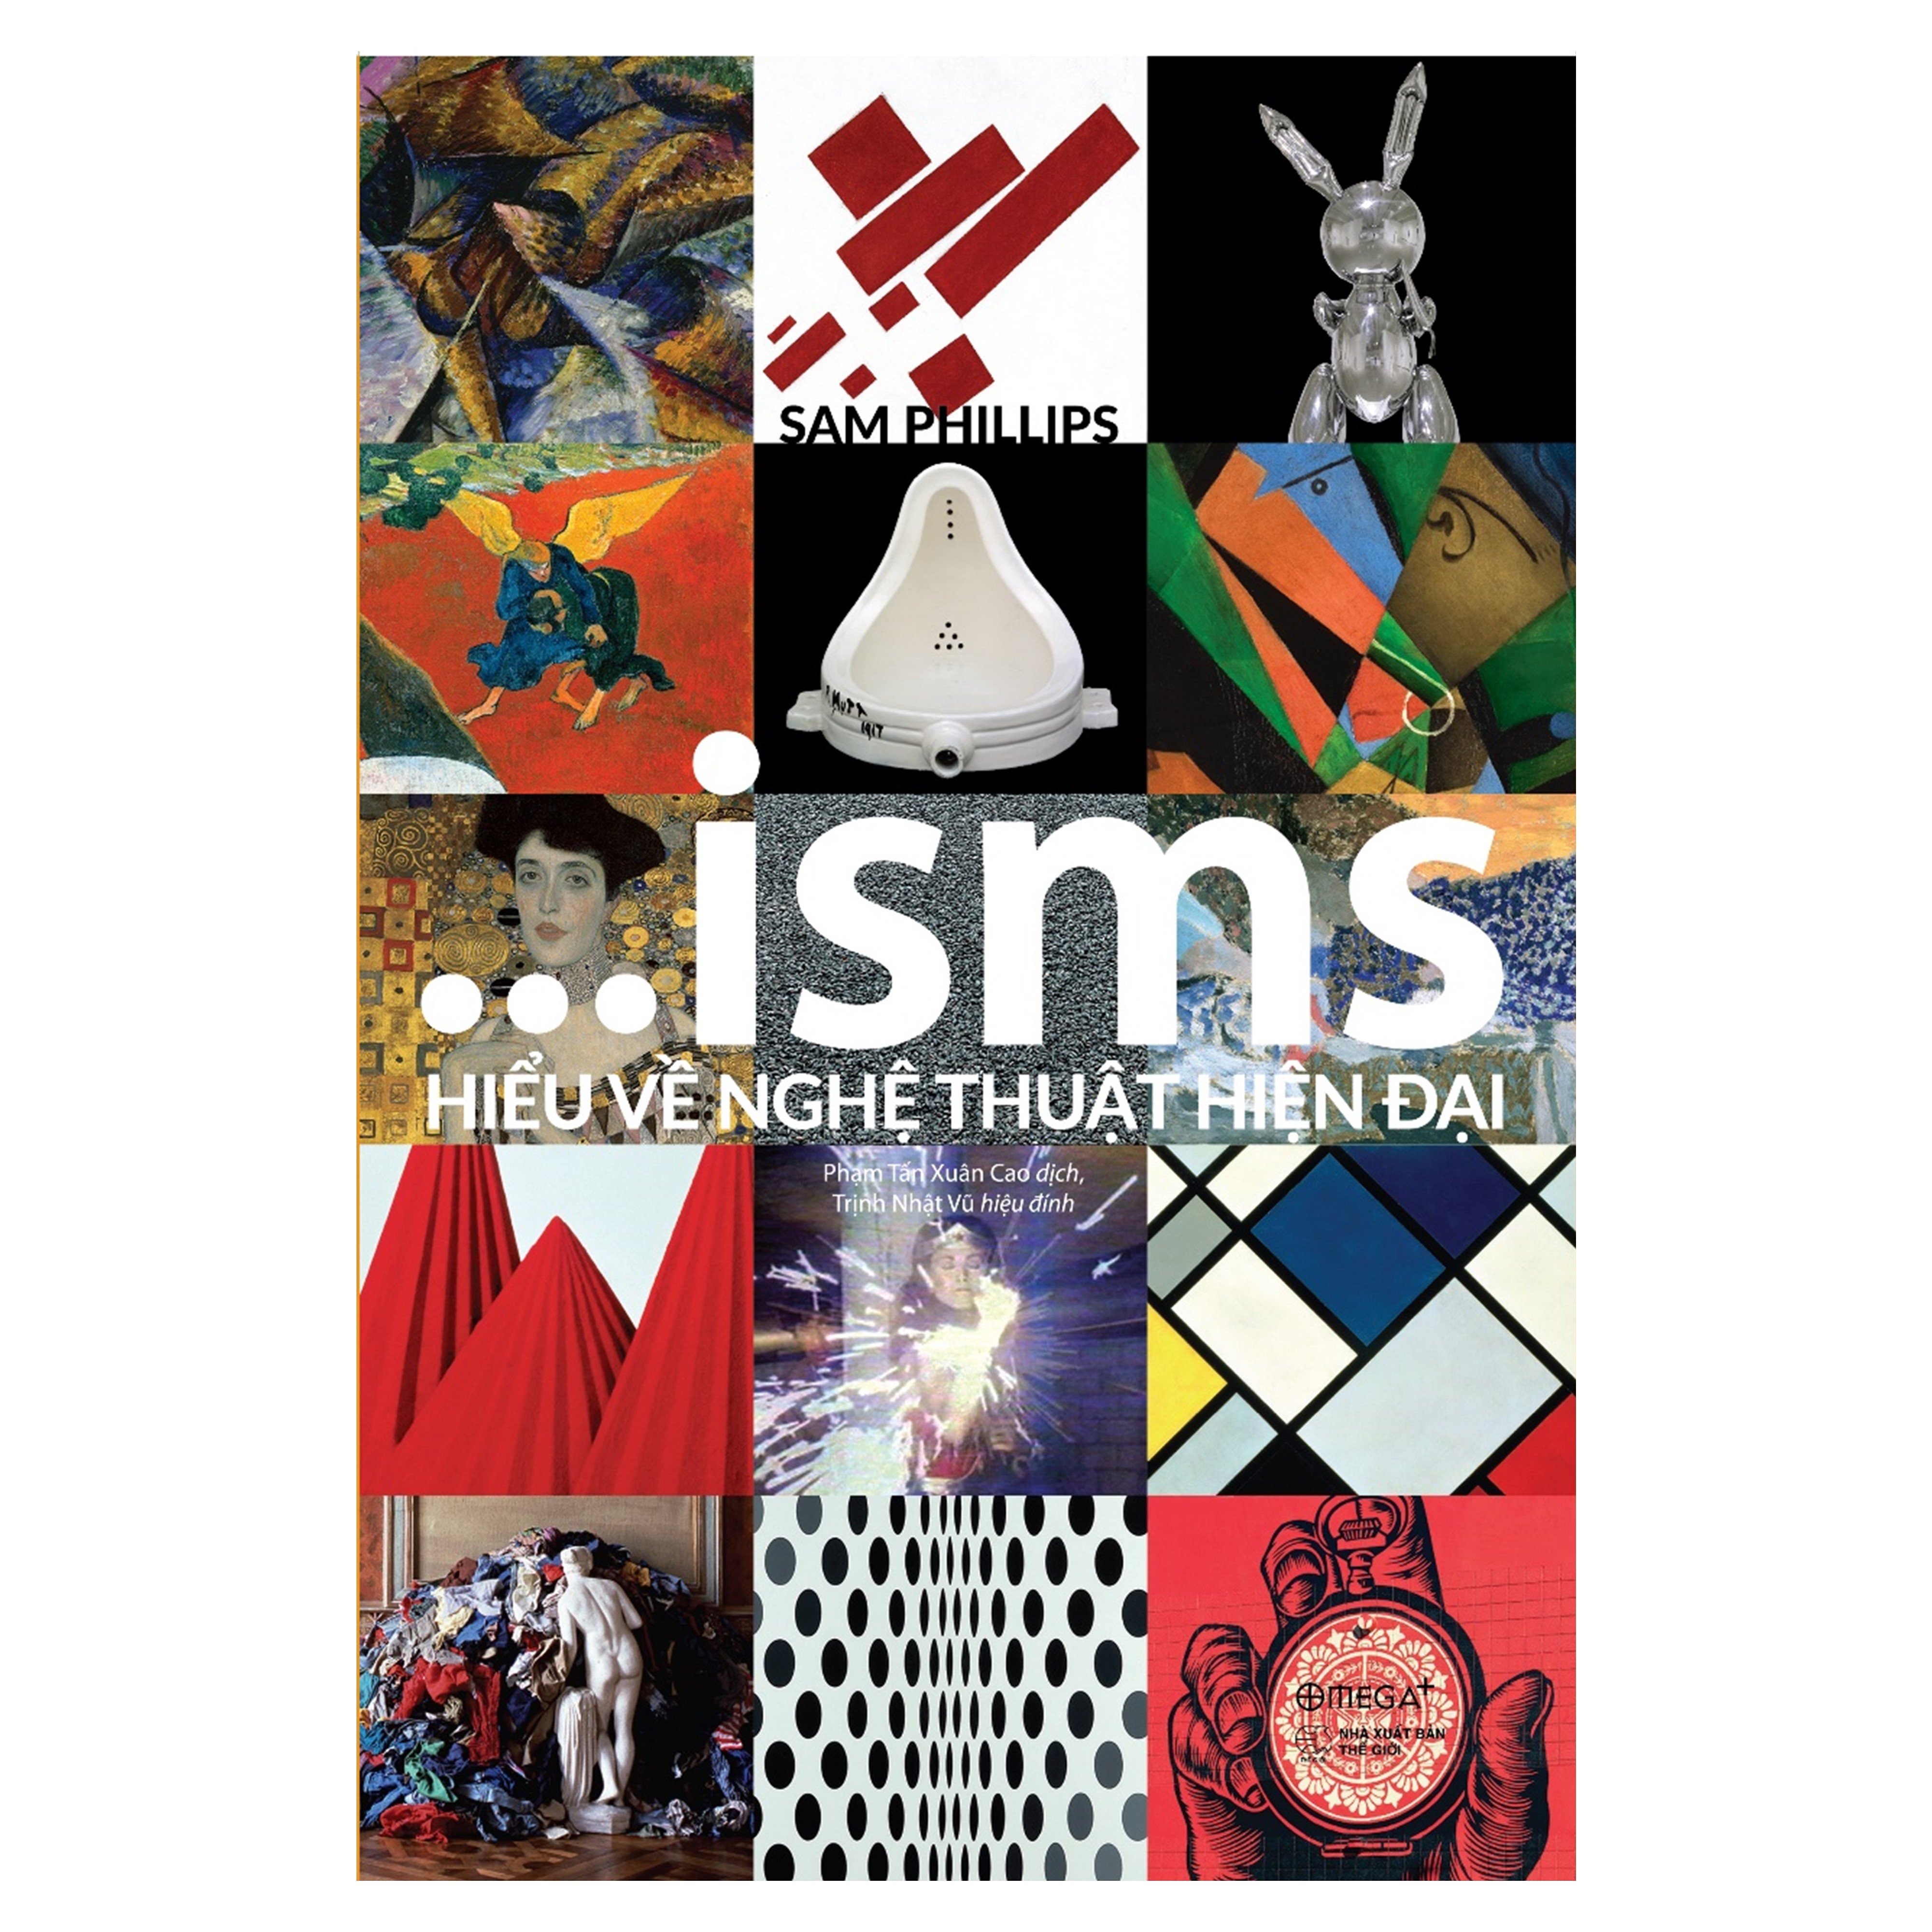 Combo ISMS: Hiểu Về Nghệ Thuật Hiện Đại + Ngôn Ngữ Của Chúa